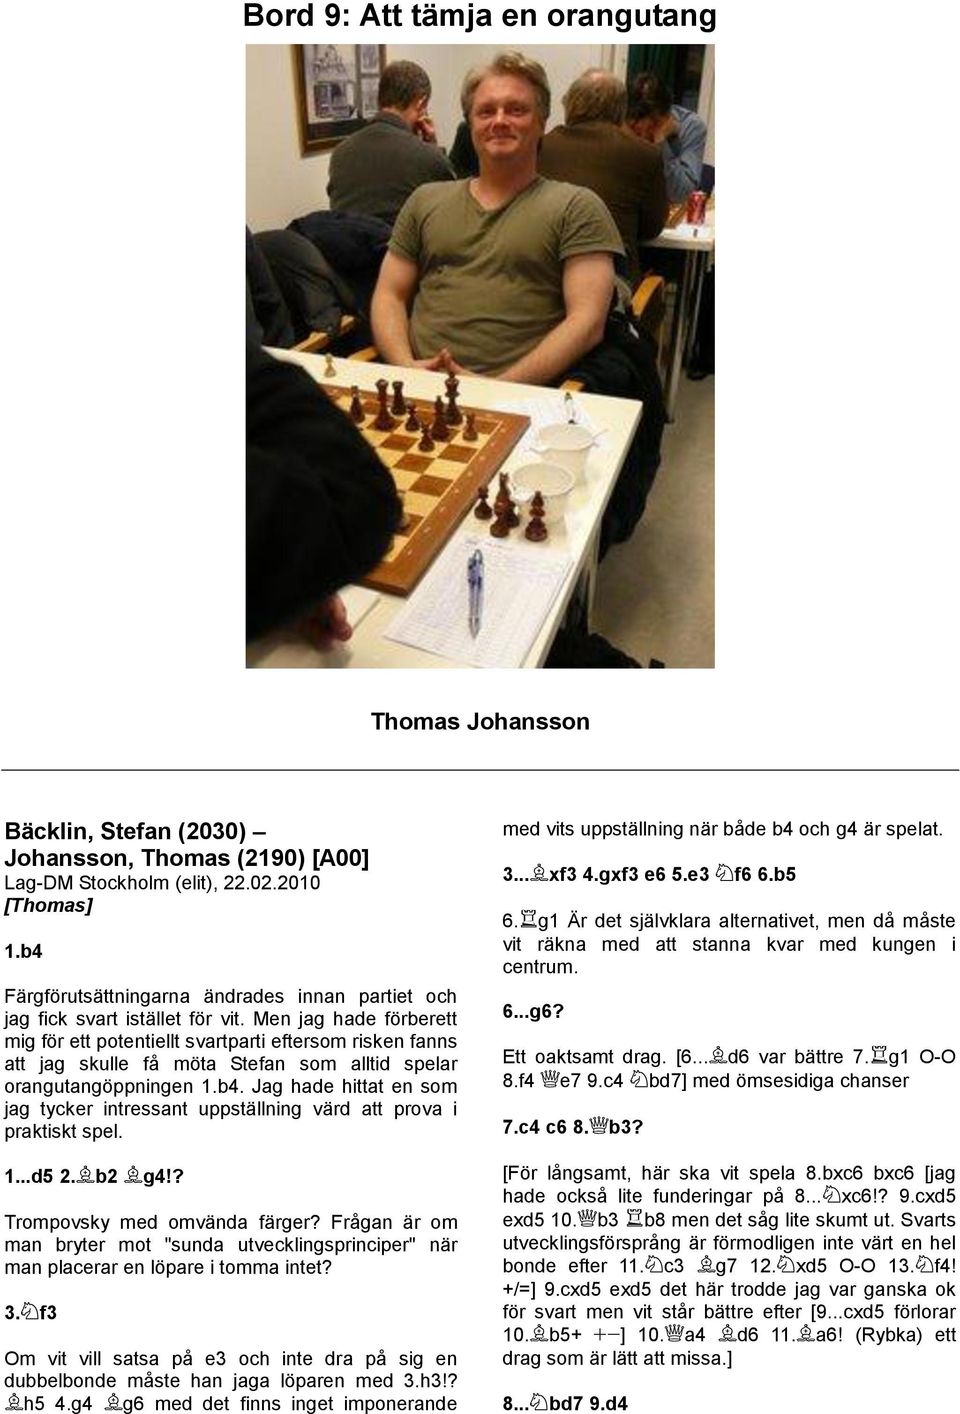 Jag hade hittat en som jag tycker intressant uppställning värd att prova i praktiskt spel. 1...d5 2. b2 g4!? Trompovsky med omvända färger?